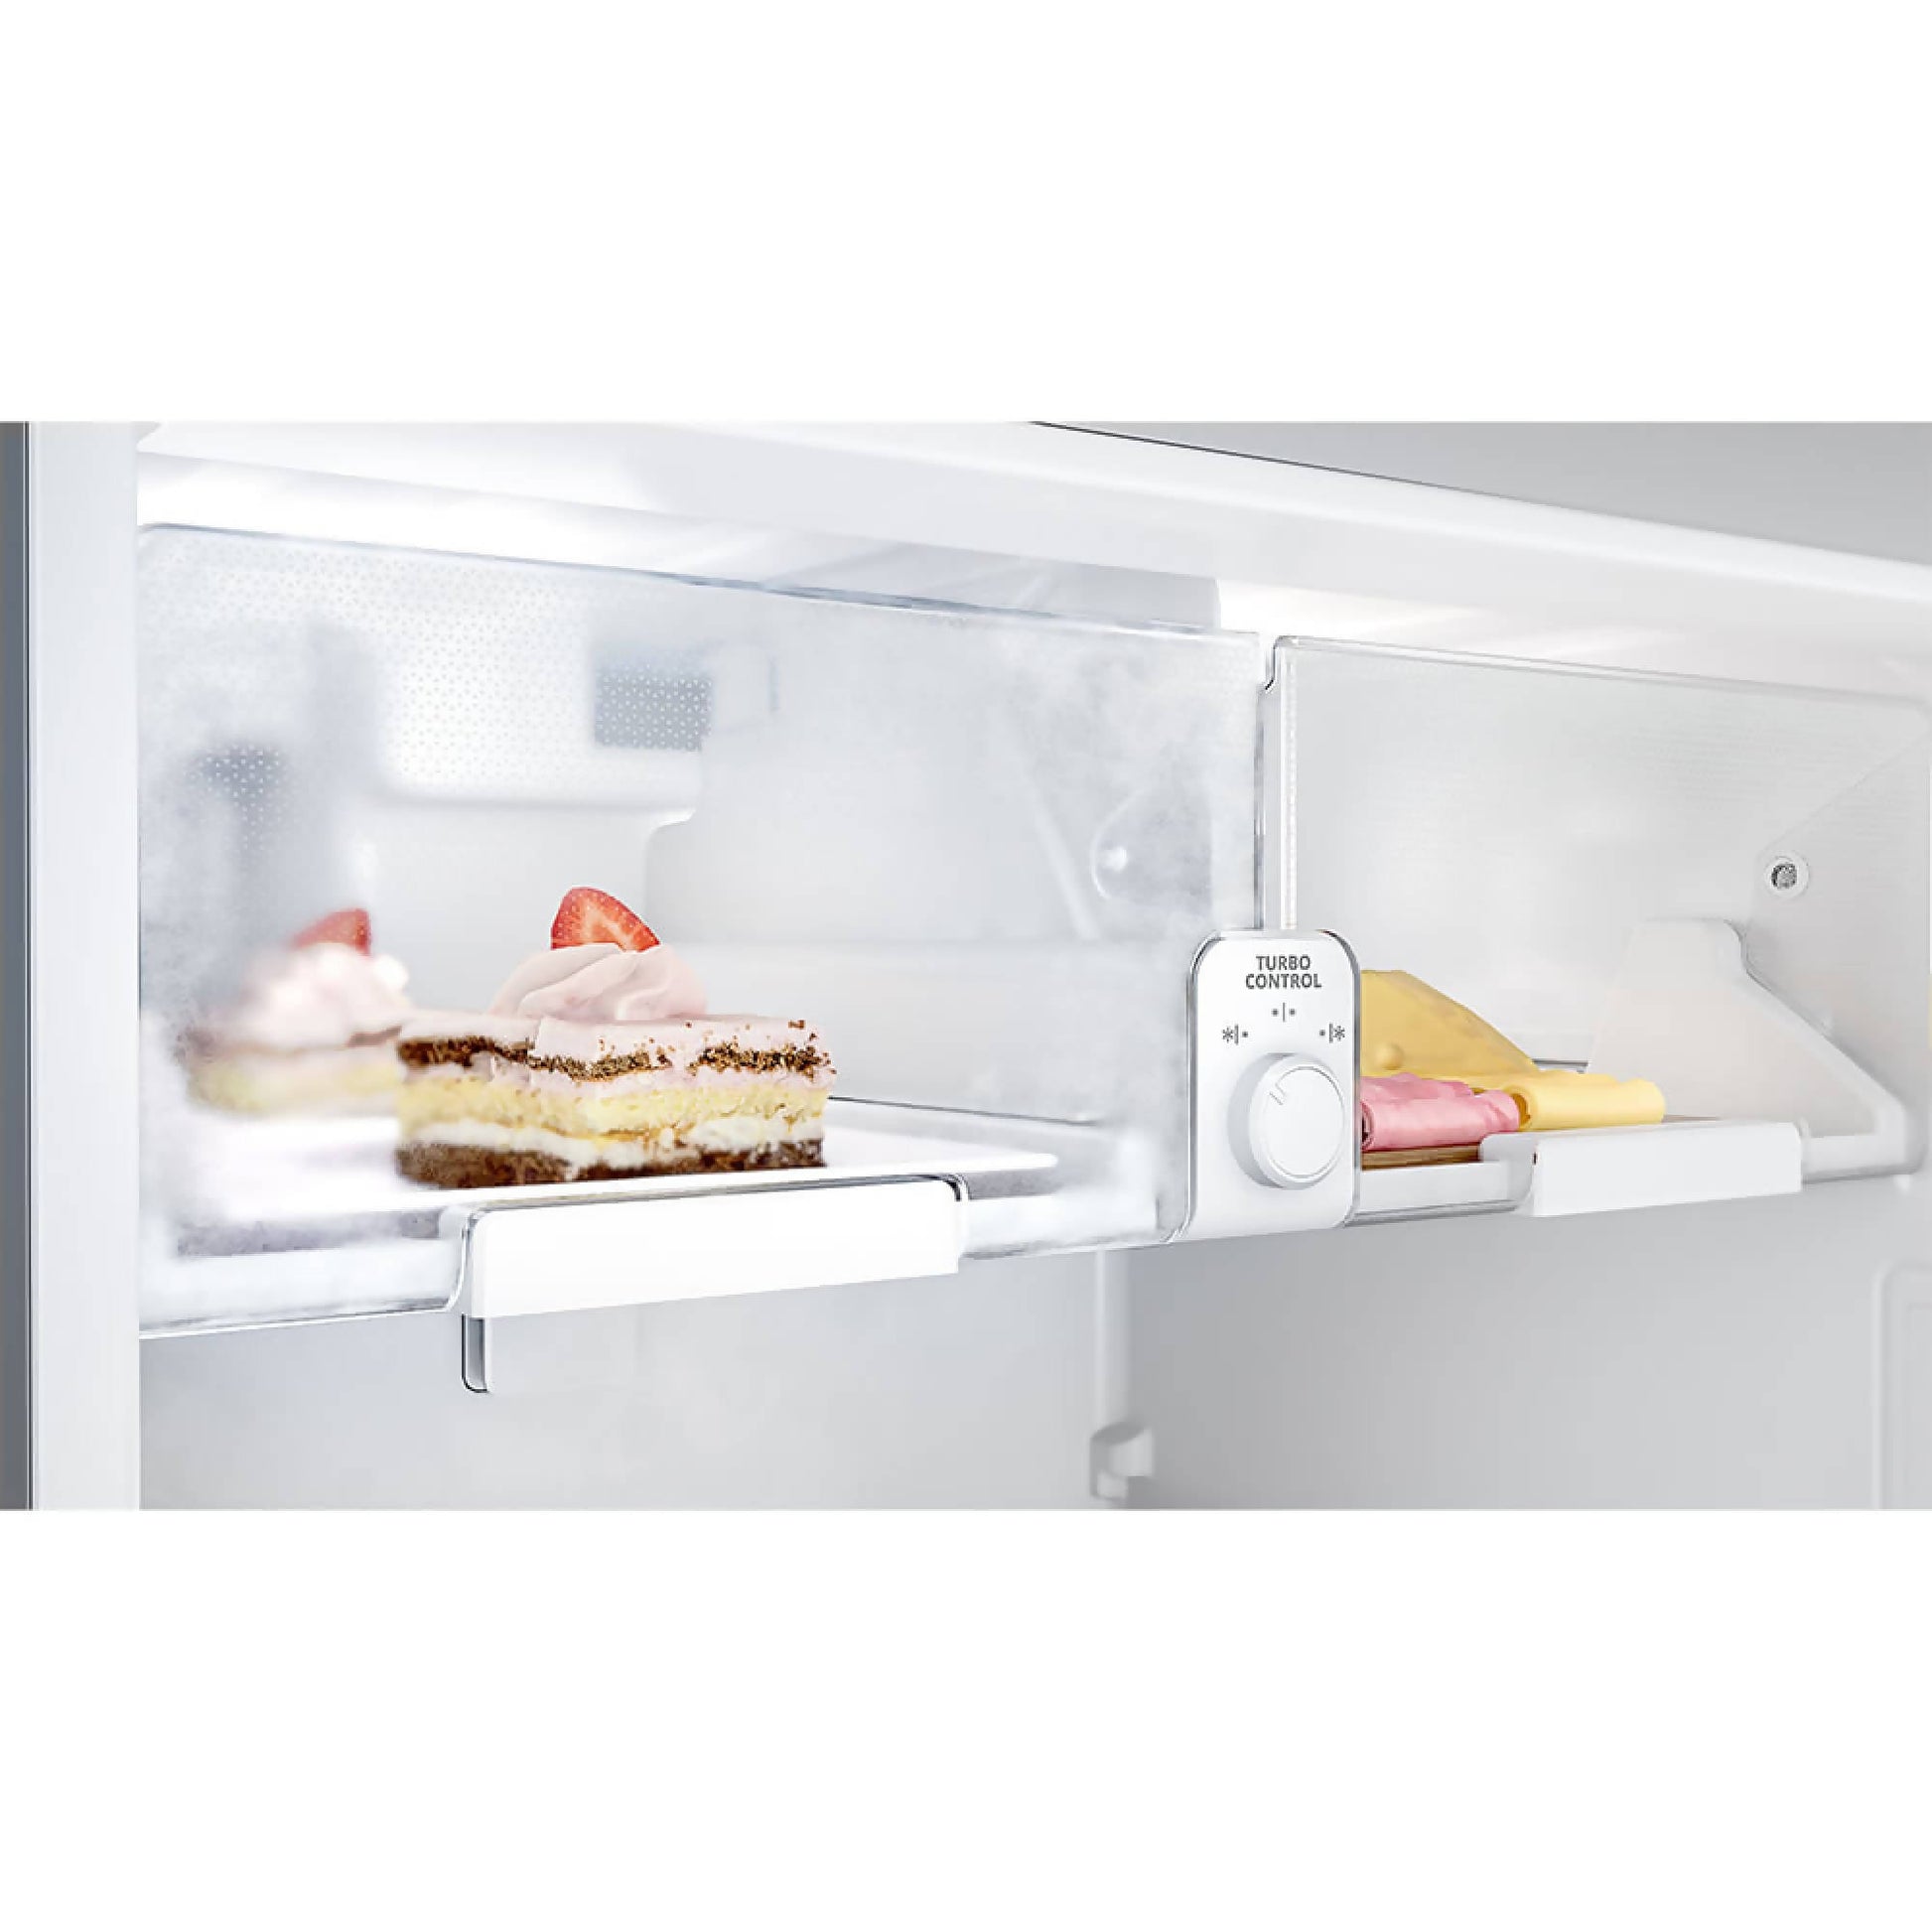 Refrigerador whirlpool Combinado 462 Lts5#Acero